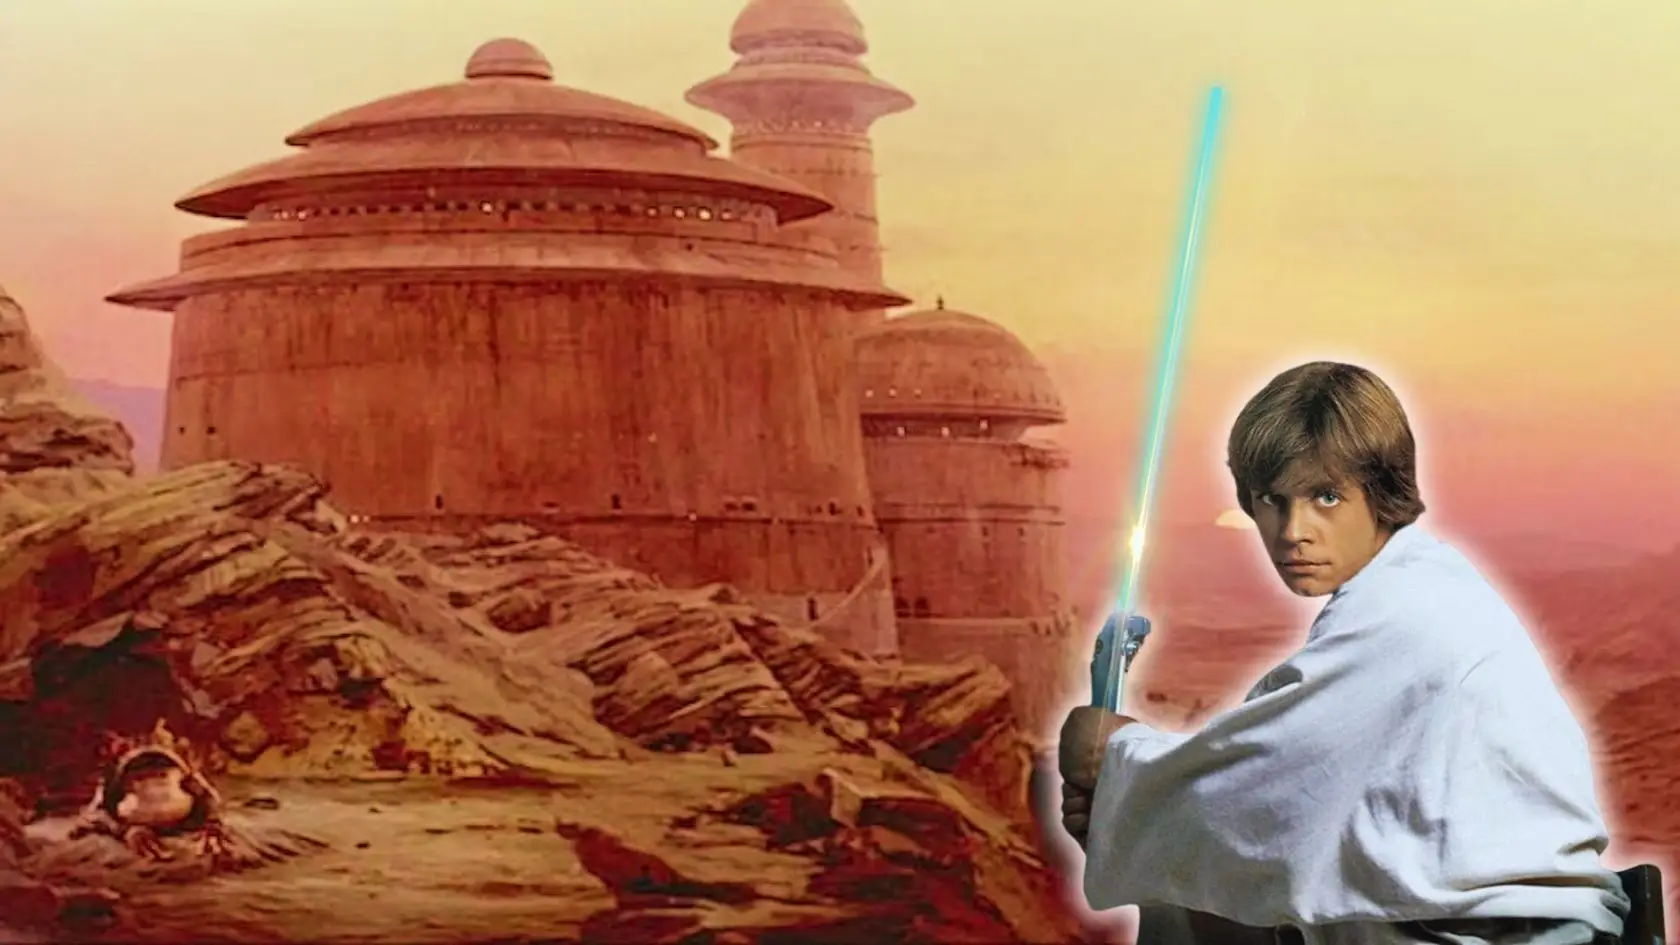 Star Wars Tatooine Filming Location